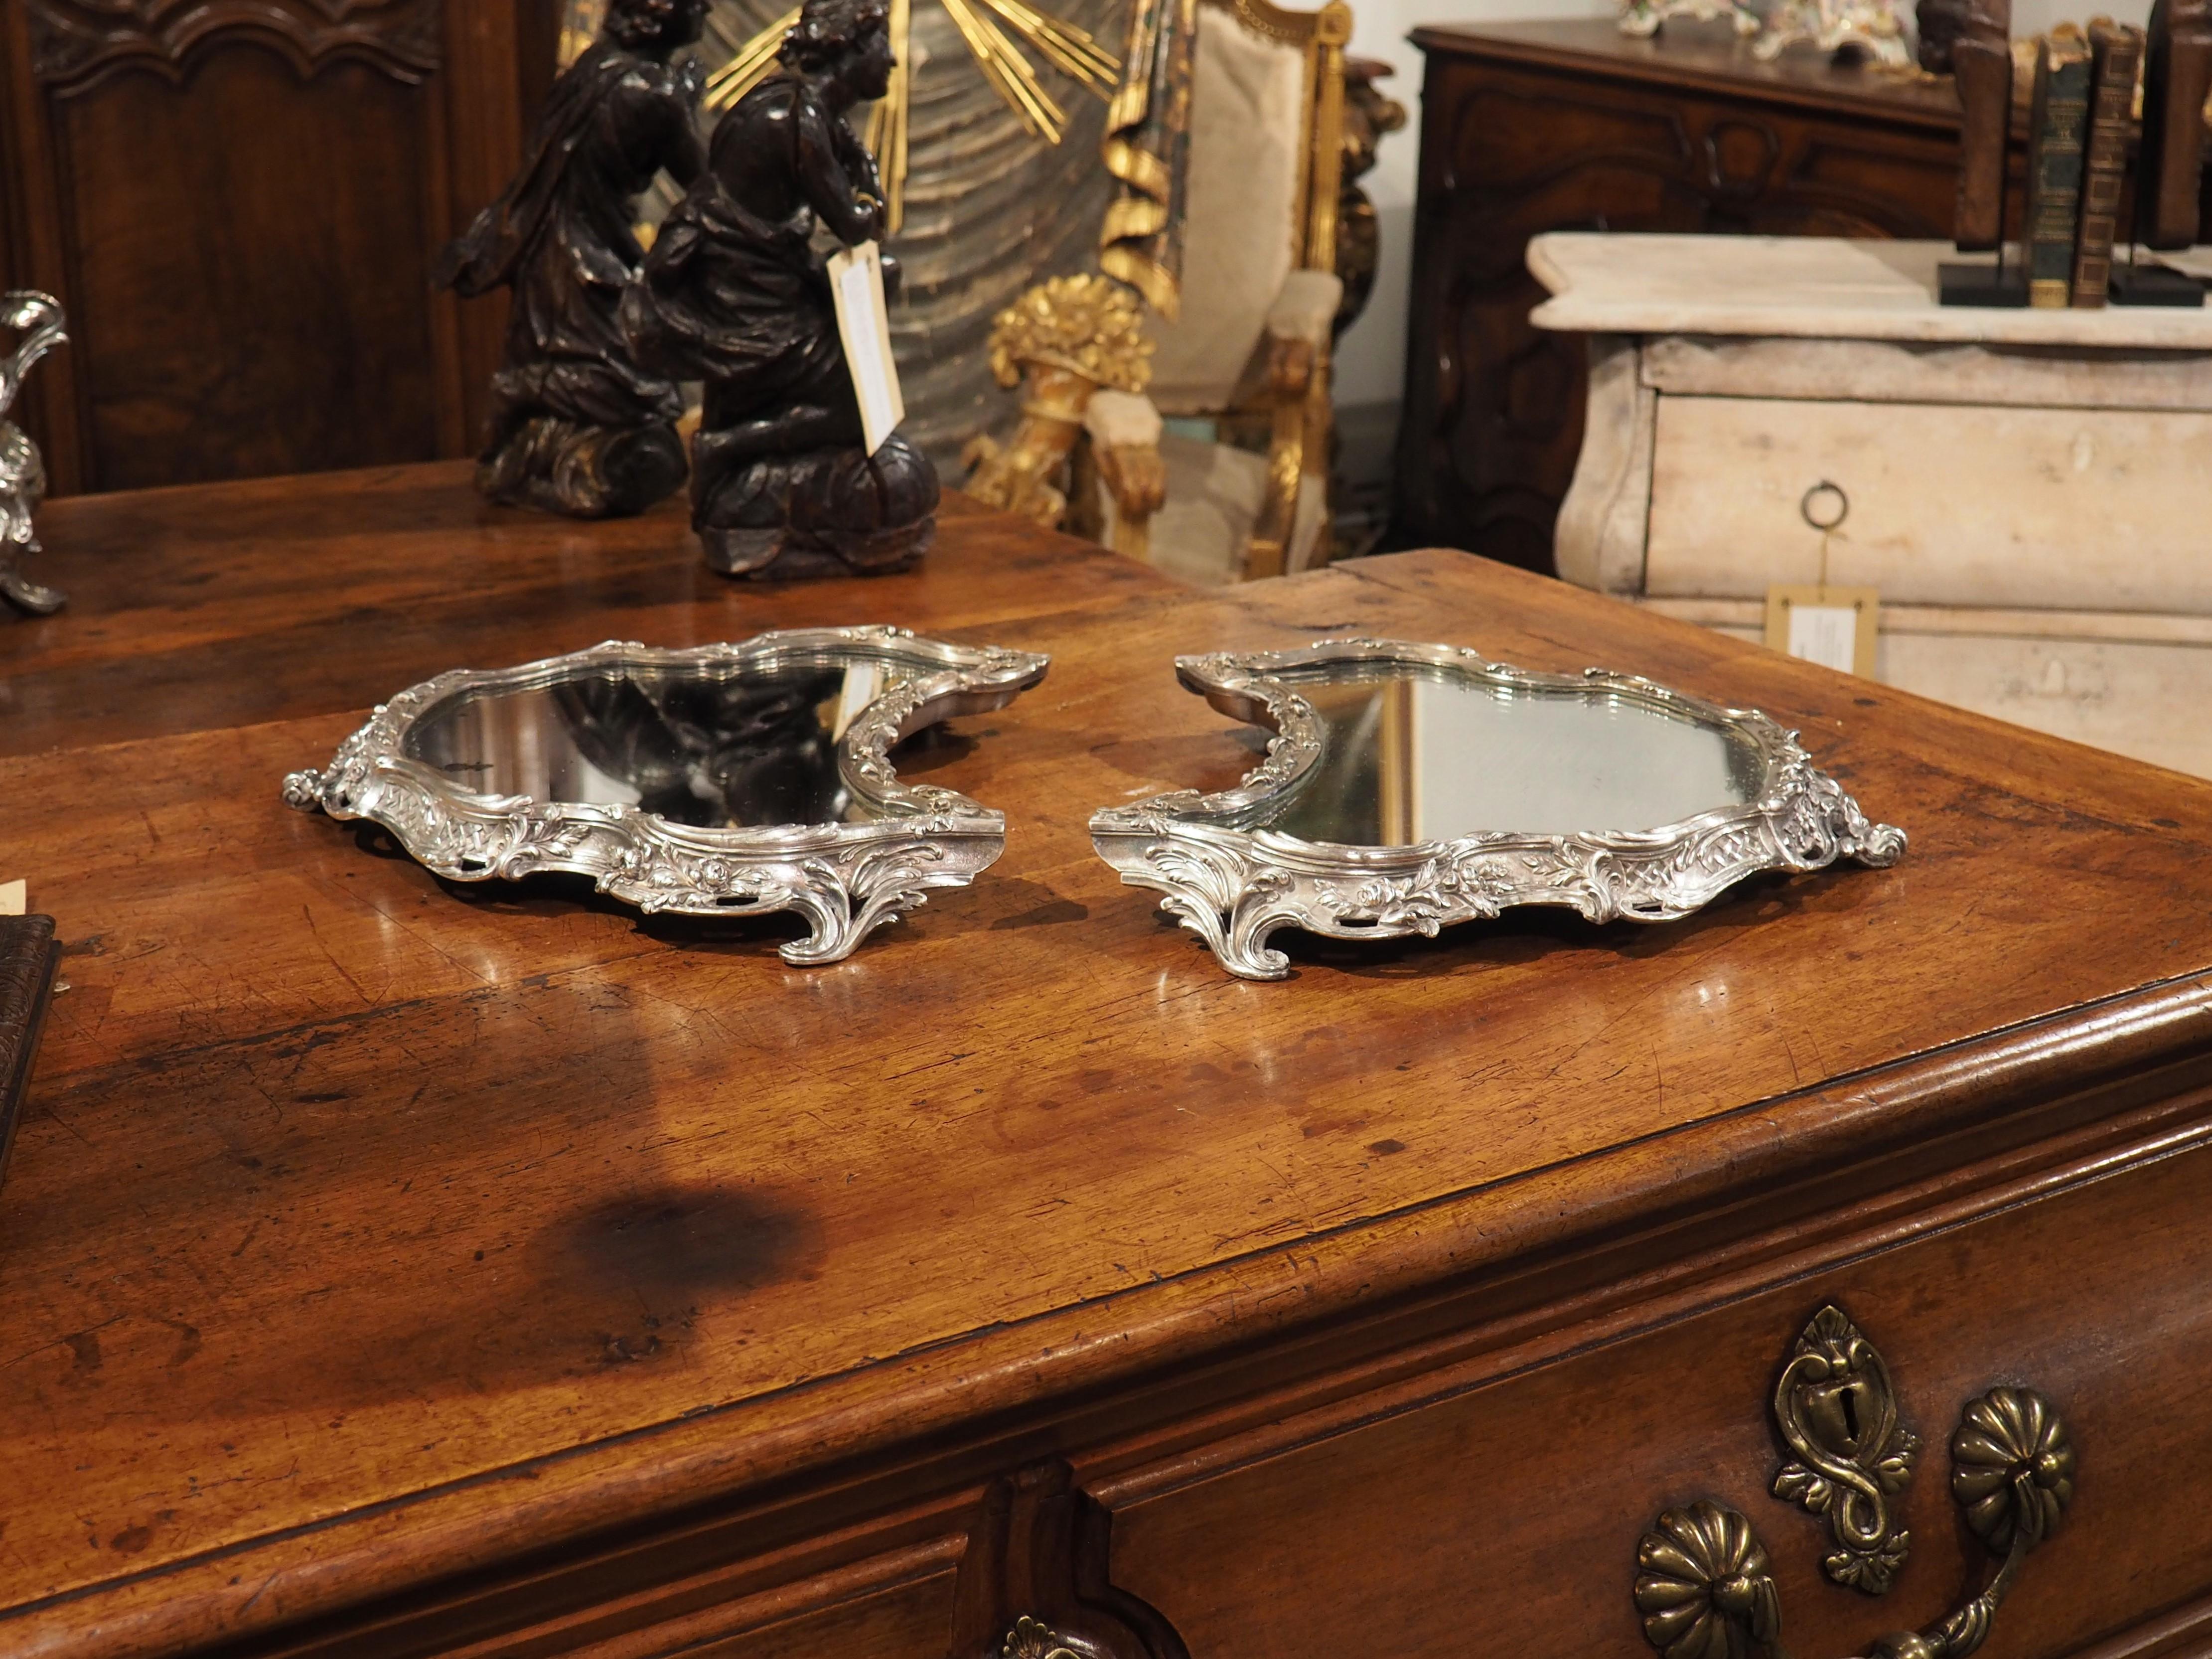 Treten Sie ein in die Welt des exquisiten Frankreichs des 19. Jahrhunderts mit einem 2-teiligen versilberten Bronze-Surtout de Table. Diese prächtigen Stücke sind mit stark geformten Spiegeln verziert und von komplizierten floralen und blattartigen